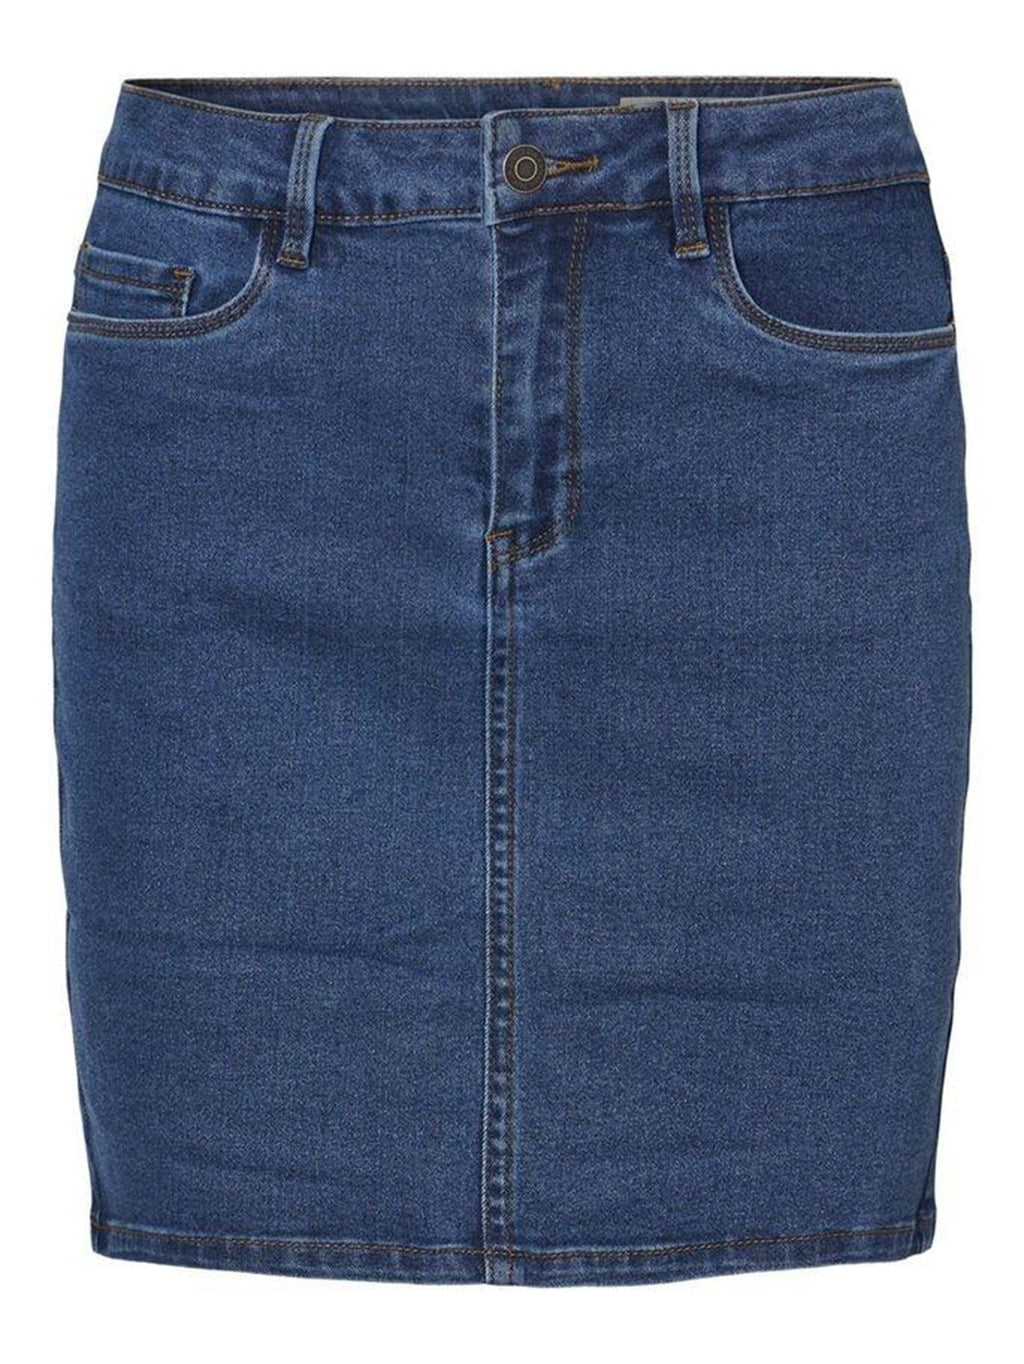 Horúca sedem sukňa - modrý džínsovina